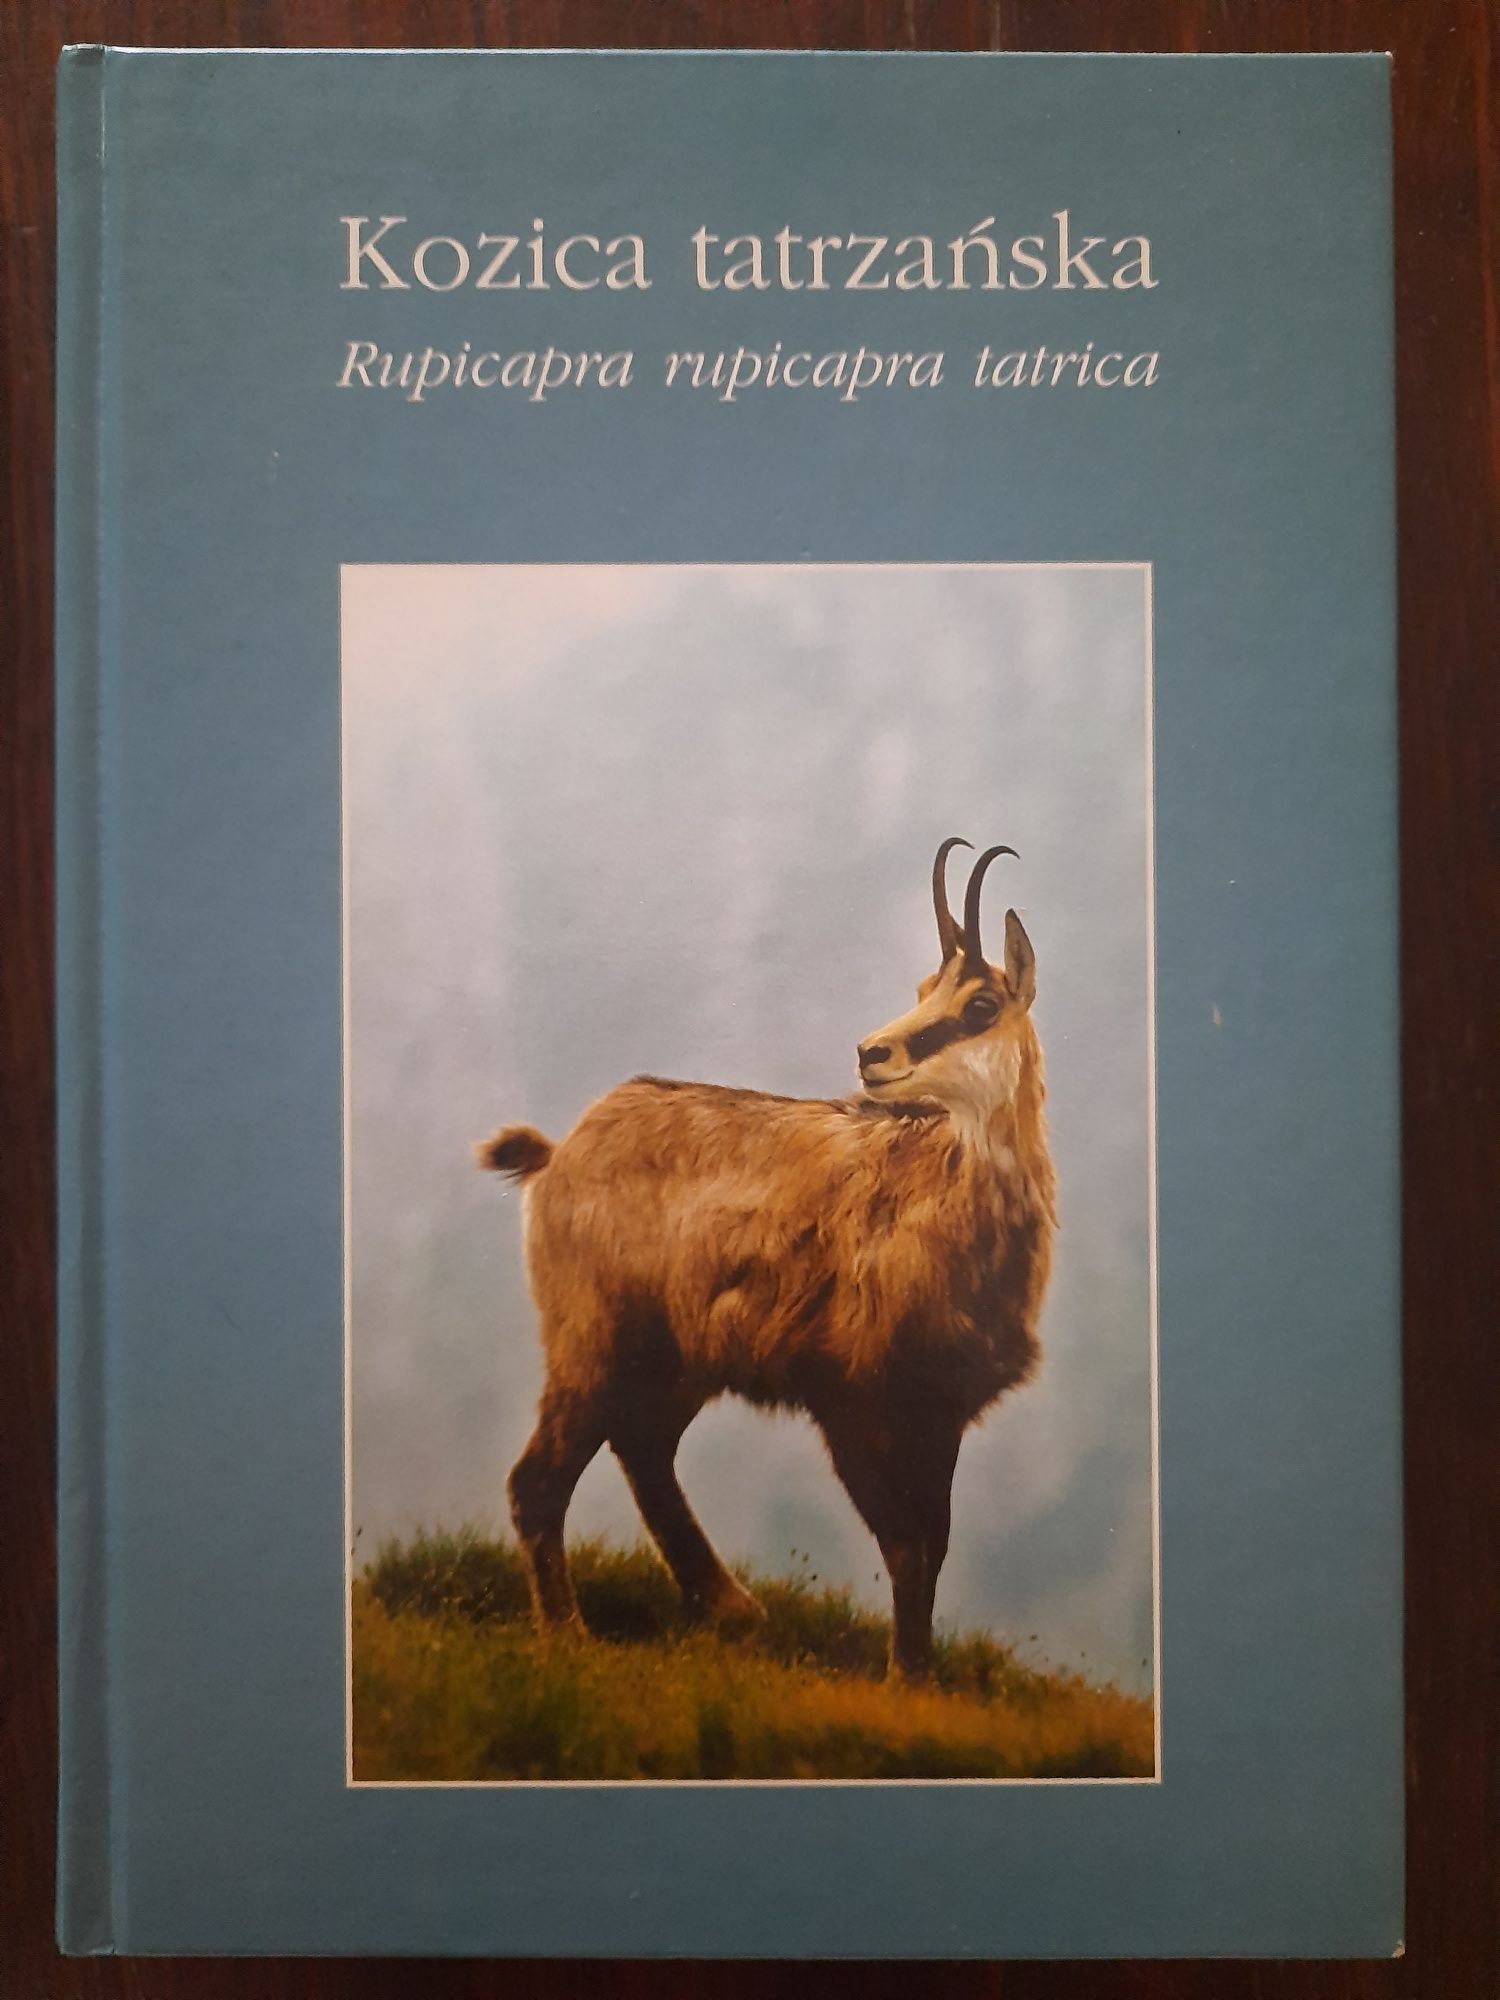 Wielka Encyklopedia Tatrzańska i inne